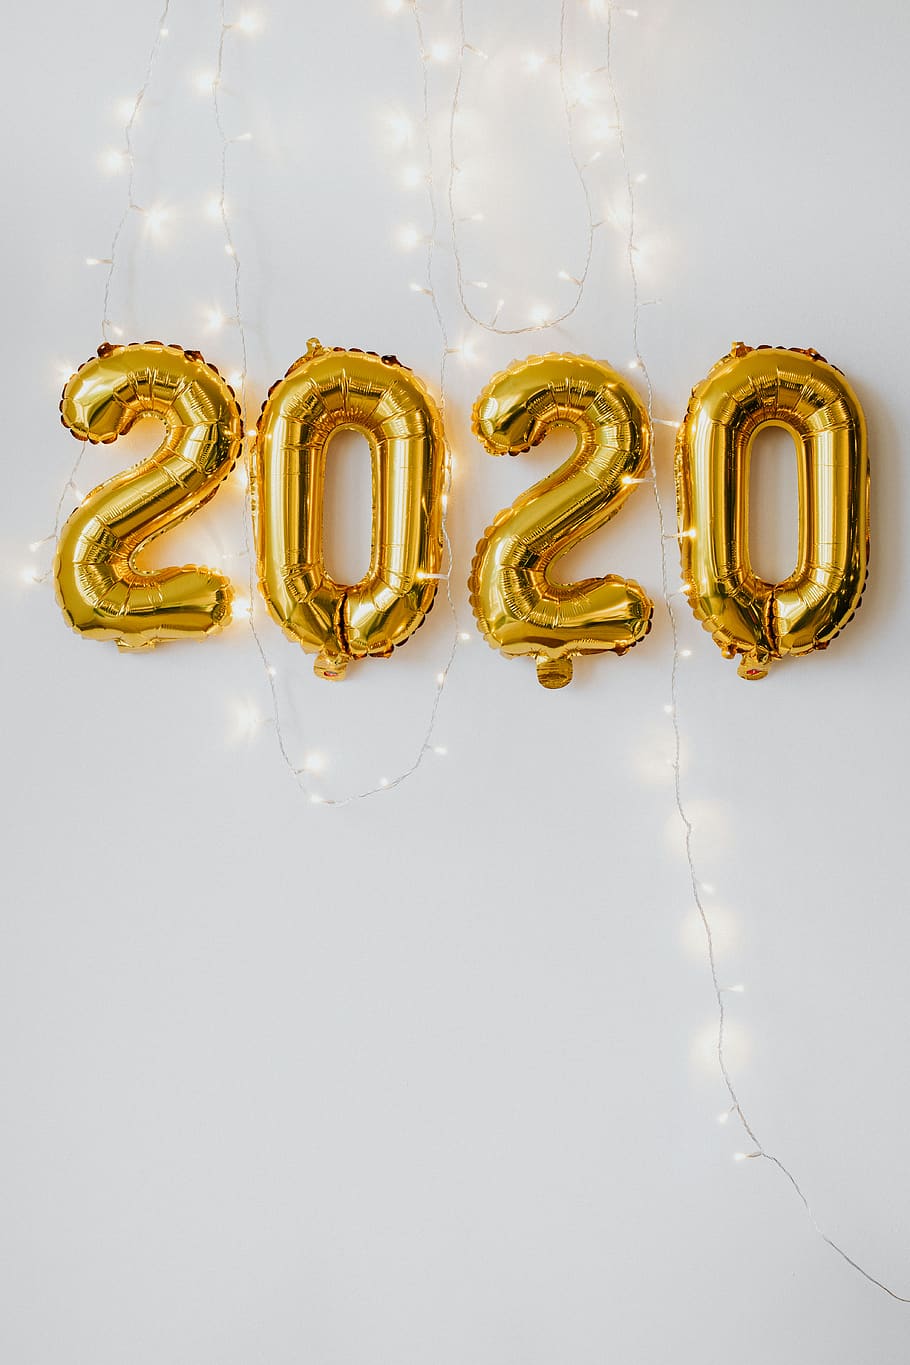 2020, víspera de año nuevo, fiesta de año nuevo, globos, oro, confeti, fiesta, diversión, tiro del estudio, en interiores